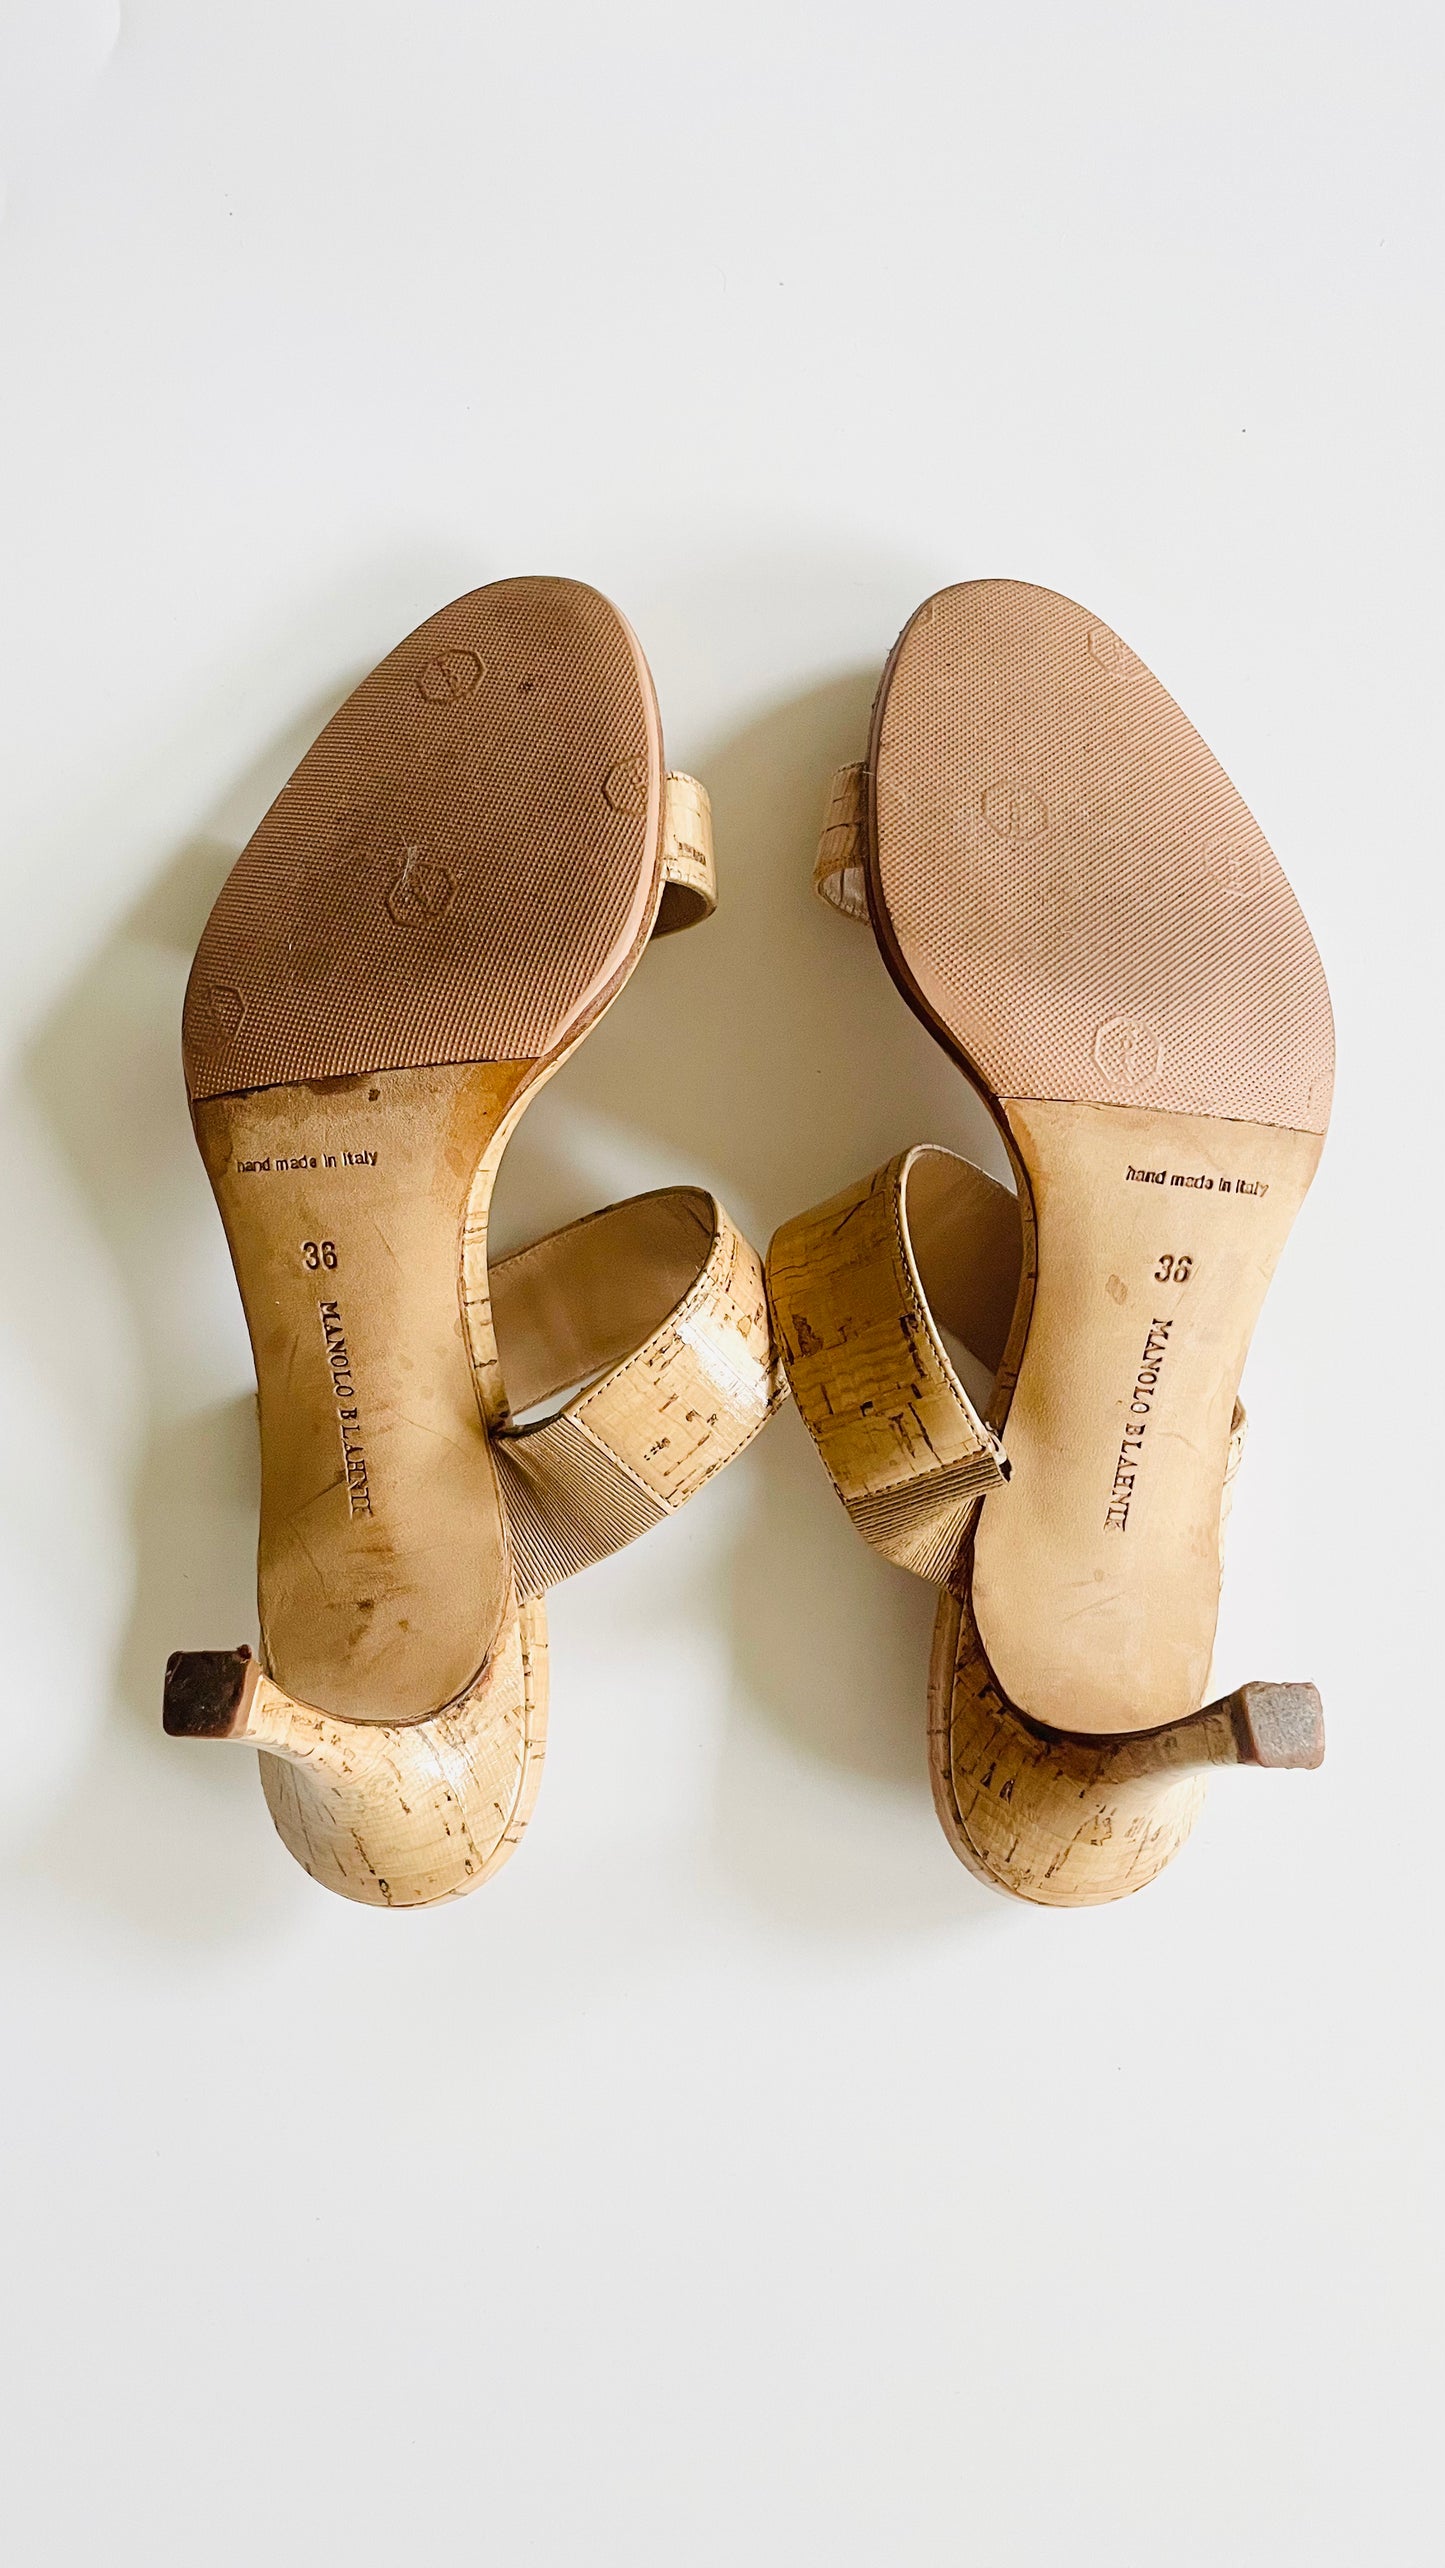 Pre-Loved Manolo Blahnik cork heels - Size 36